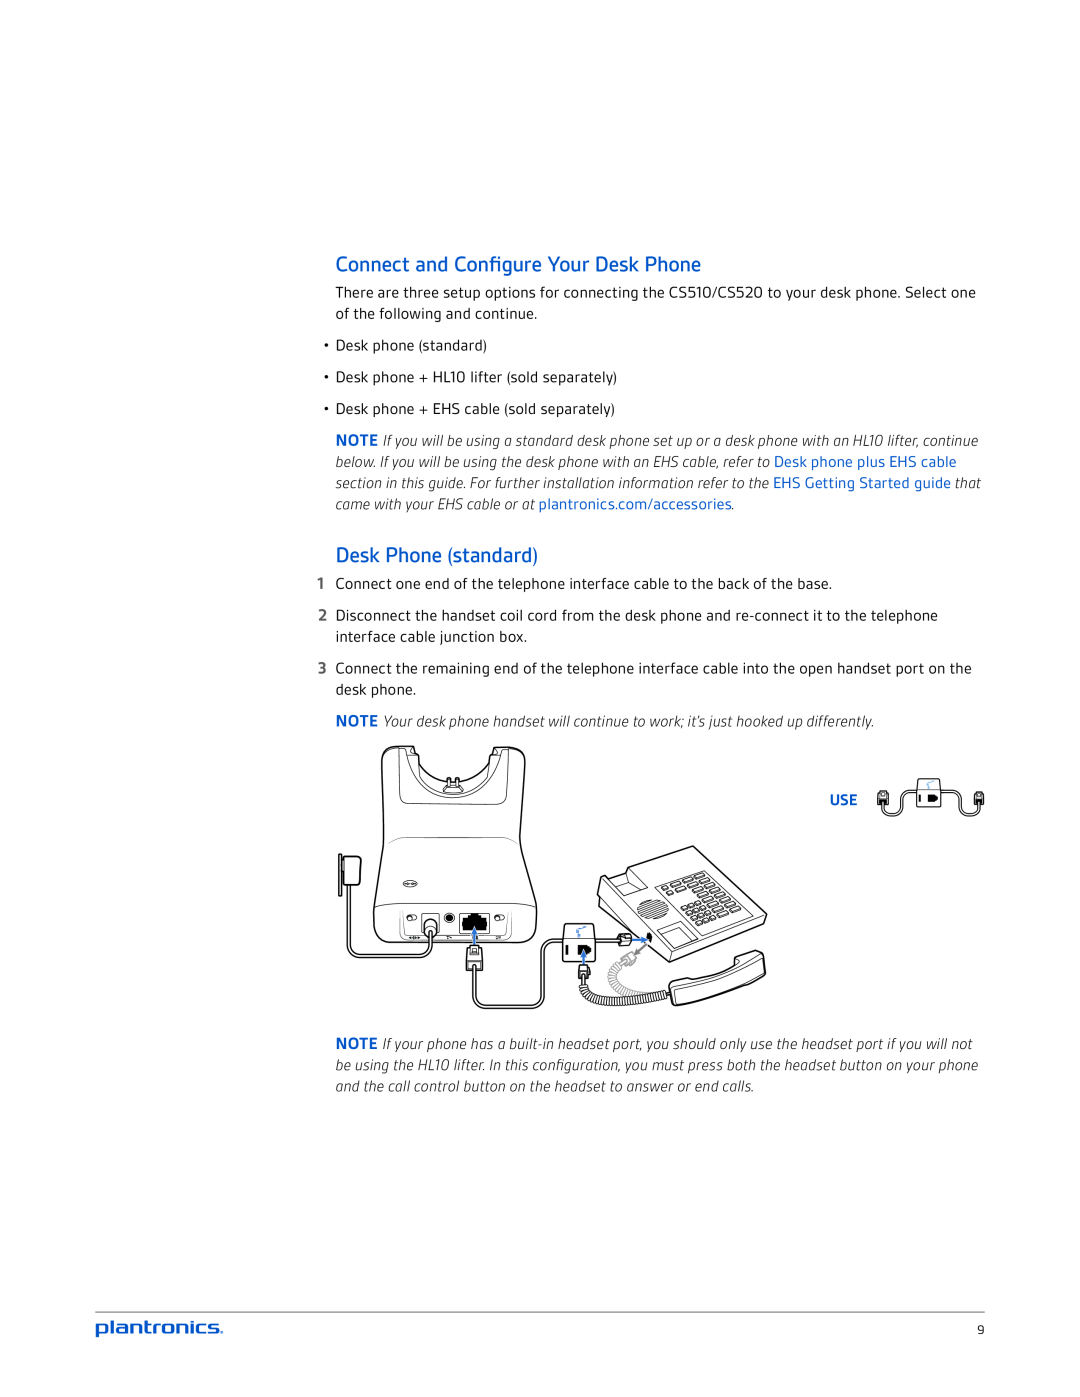 Plantronics CS520 manual Connect and Configure Your Desk Phone, Desk Phone standard 